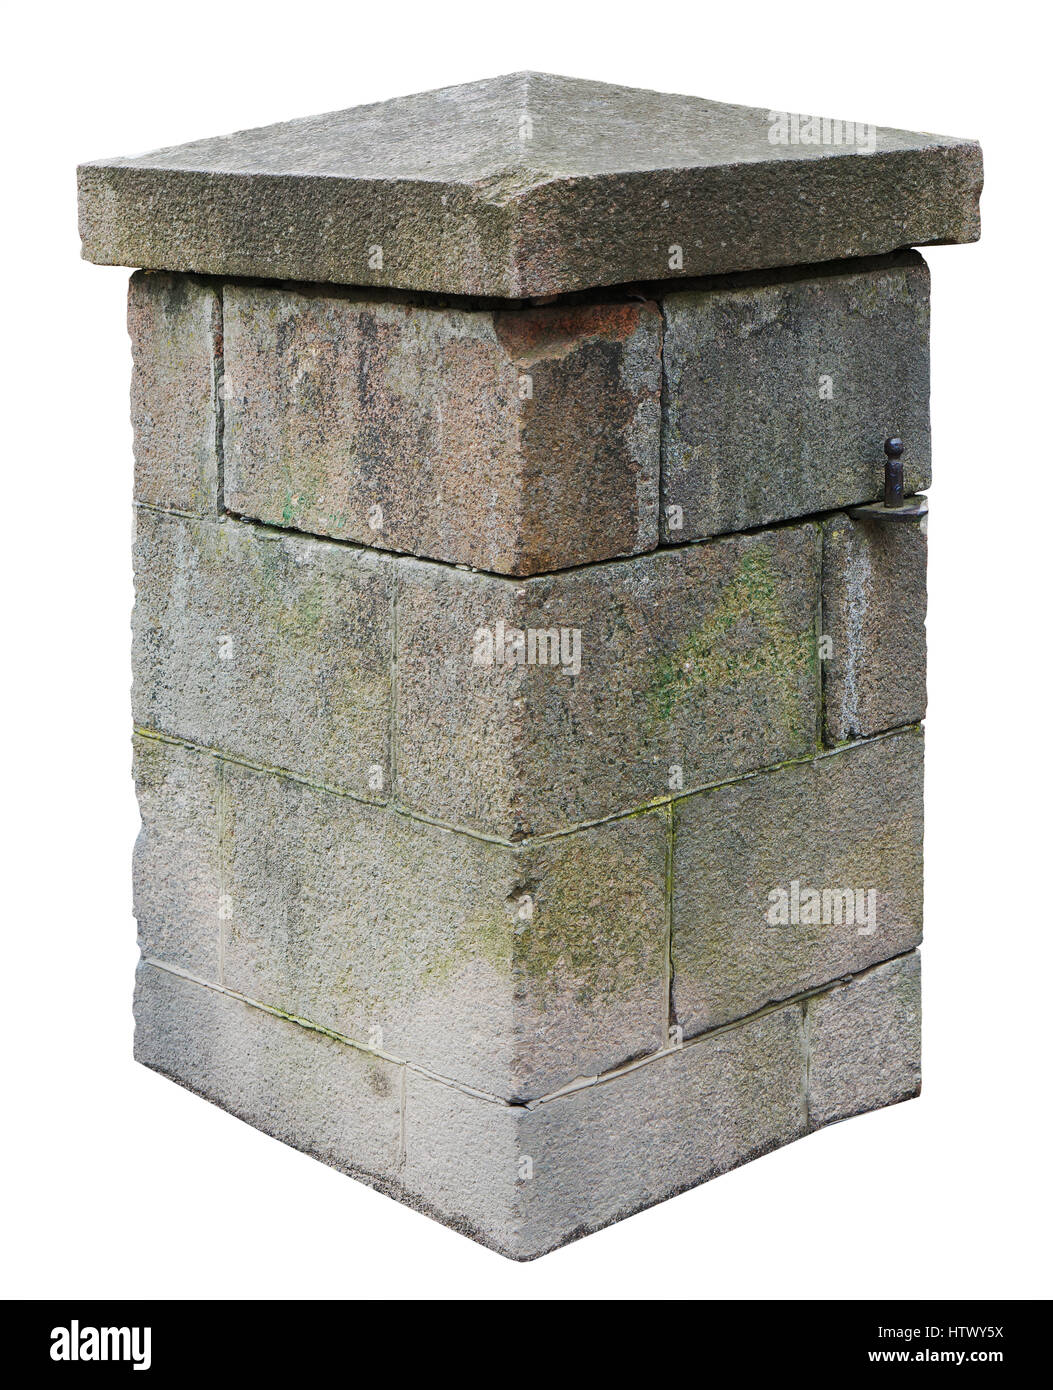 Die Spalte für die Retro-Burgtor besteht aus grob bearbeiteten Granit Blöcke im Alter. Isoliert auf weiss Stockfoto